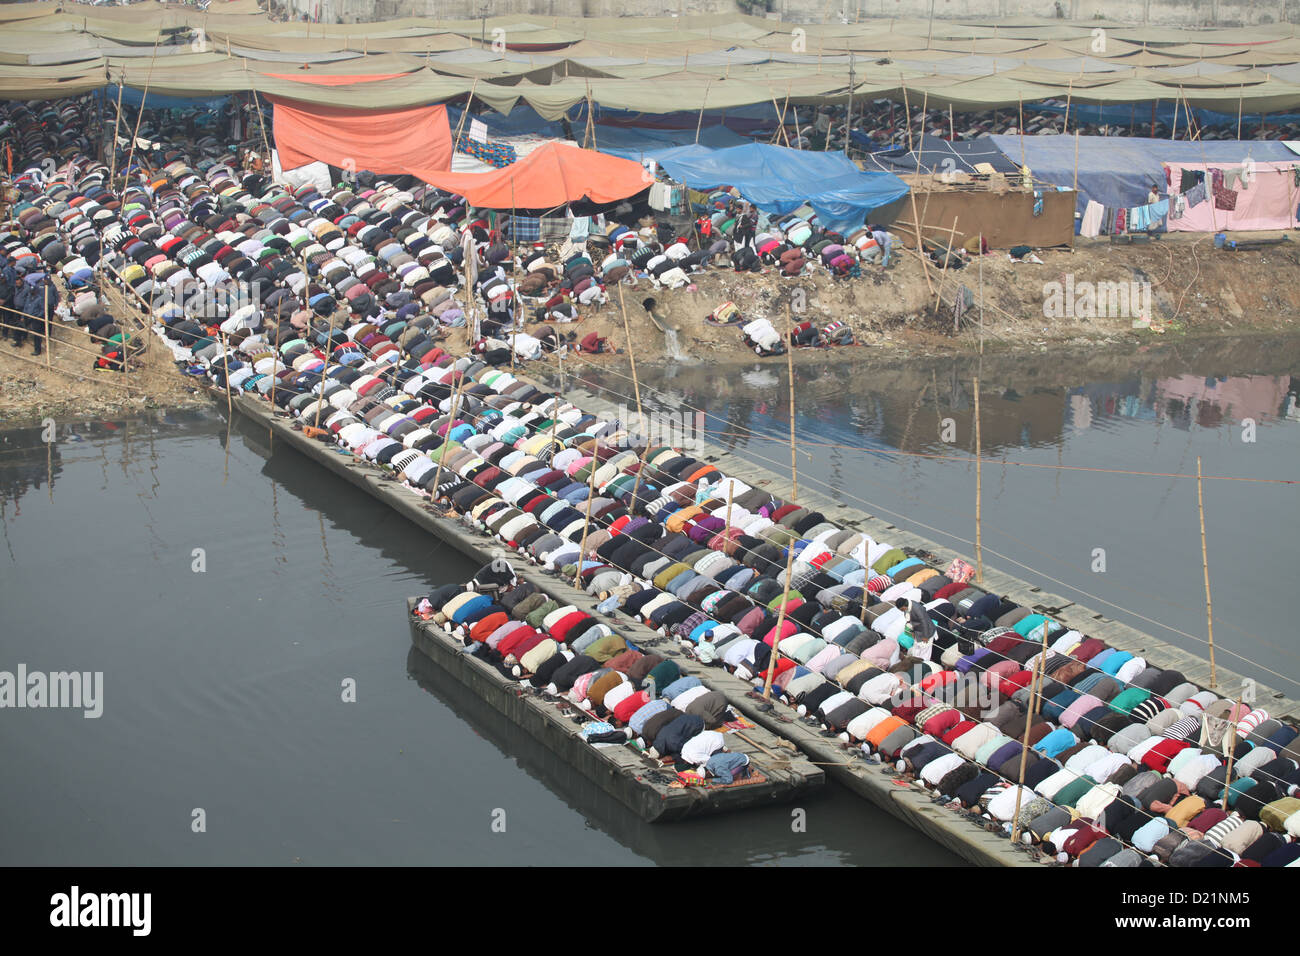 Première phase du Biswa Ijtema, l'un des plus grands rassemblements de musulmans dans le monde, commence sur les rives de la rivière Turag j Banque D'Images